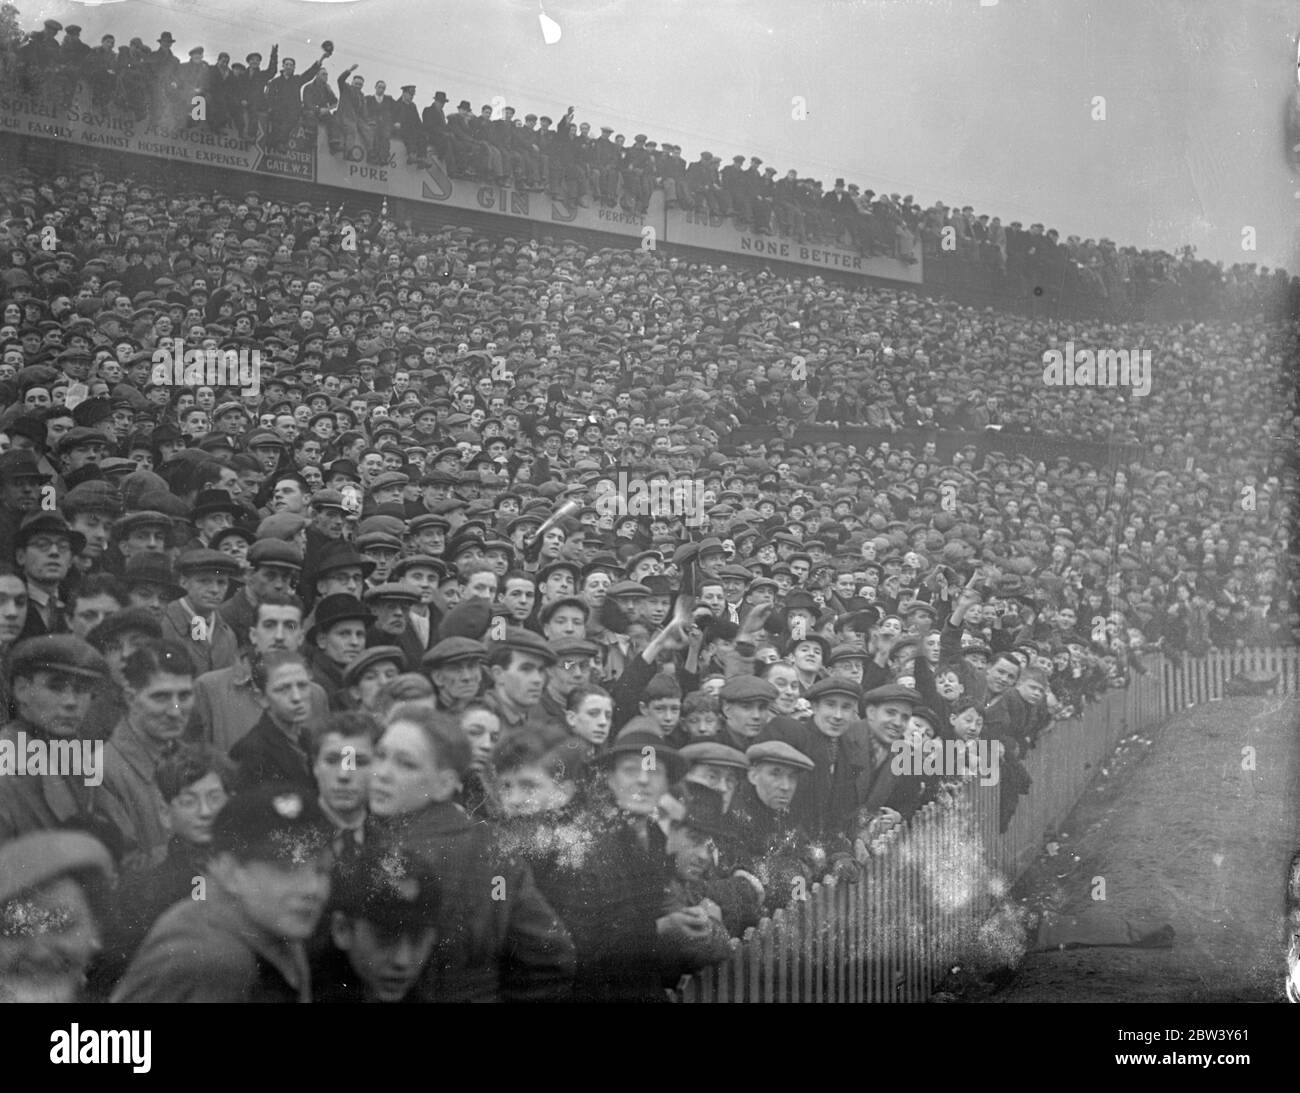 Riesige Menschenmenge im Millwall. Große Menschenmengen strömten in die Den, New Cross, für die sechste Runde Cup Tie zwischen Millwall und Manchester City. Foto zeigt, die riesigen Menschenmengen bei Millwall. März 1937 Stockfoto